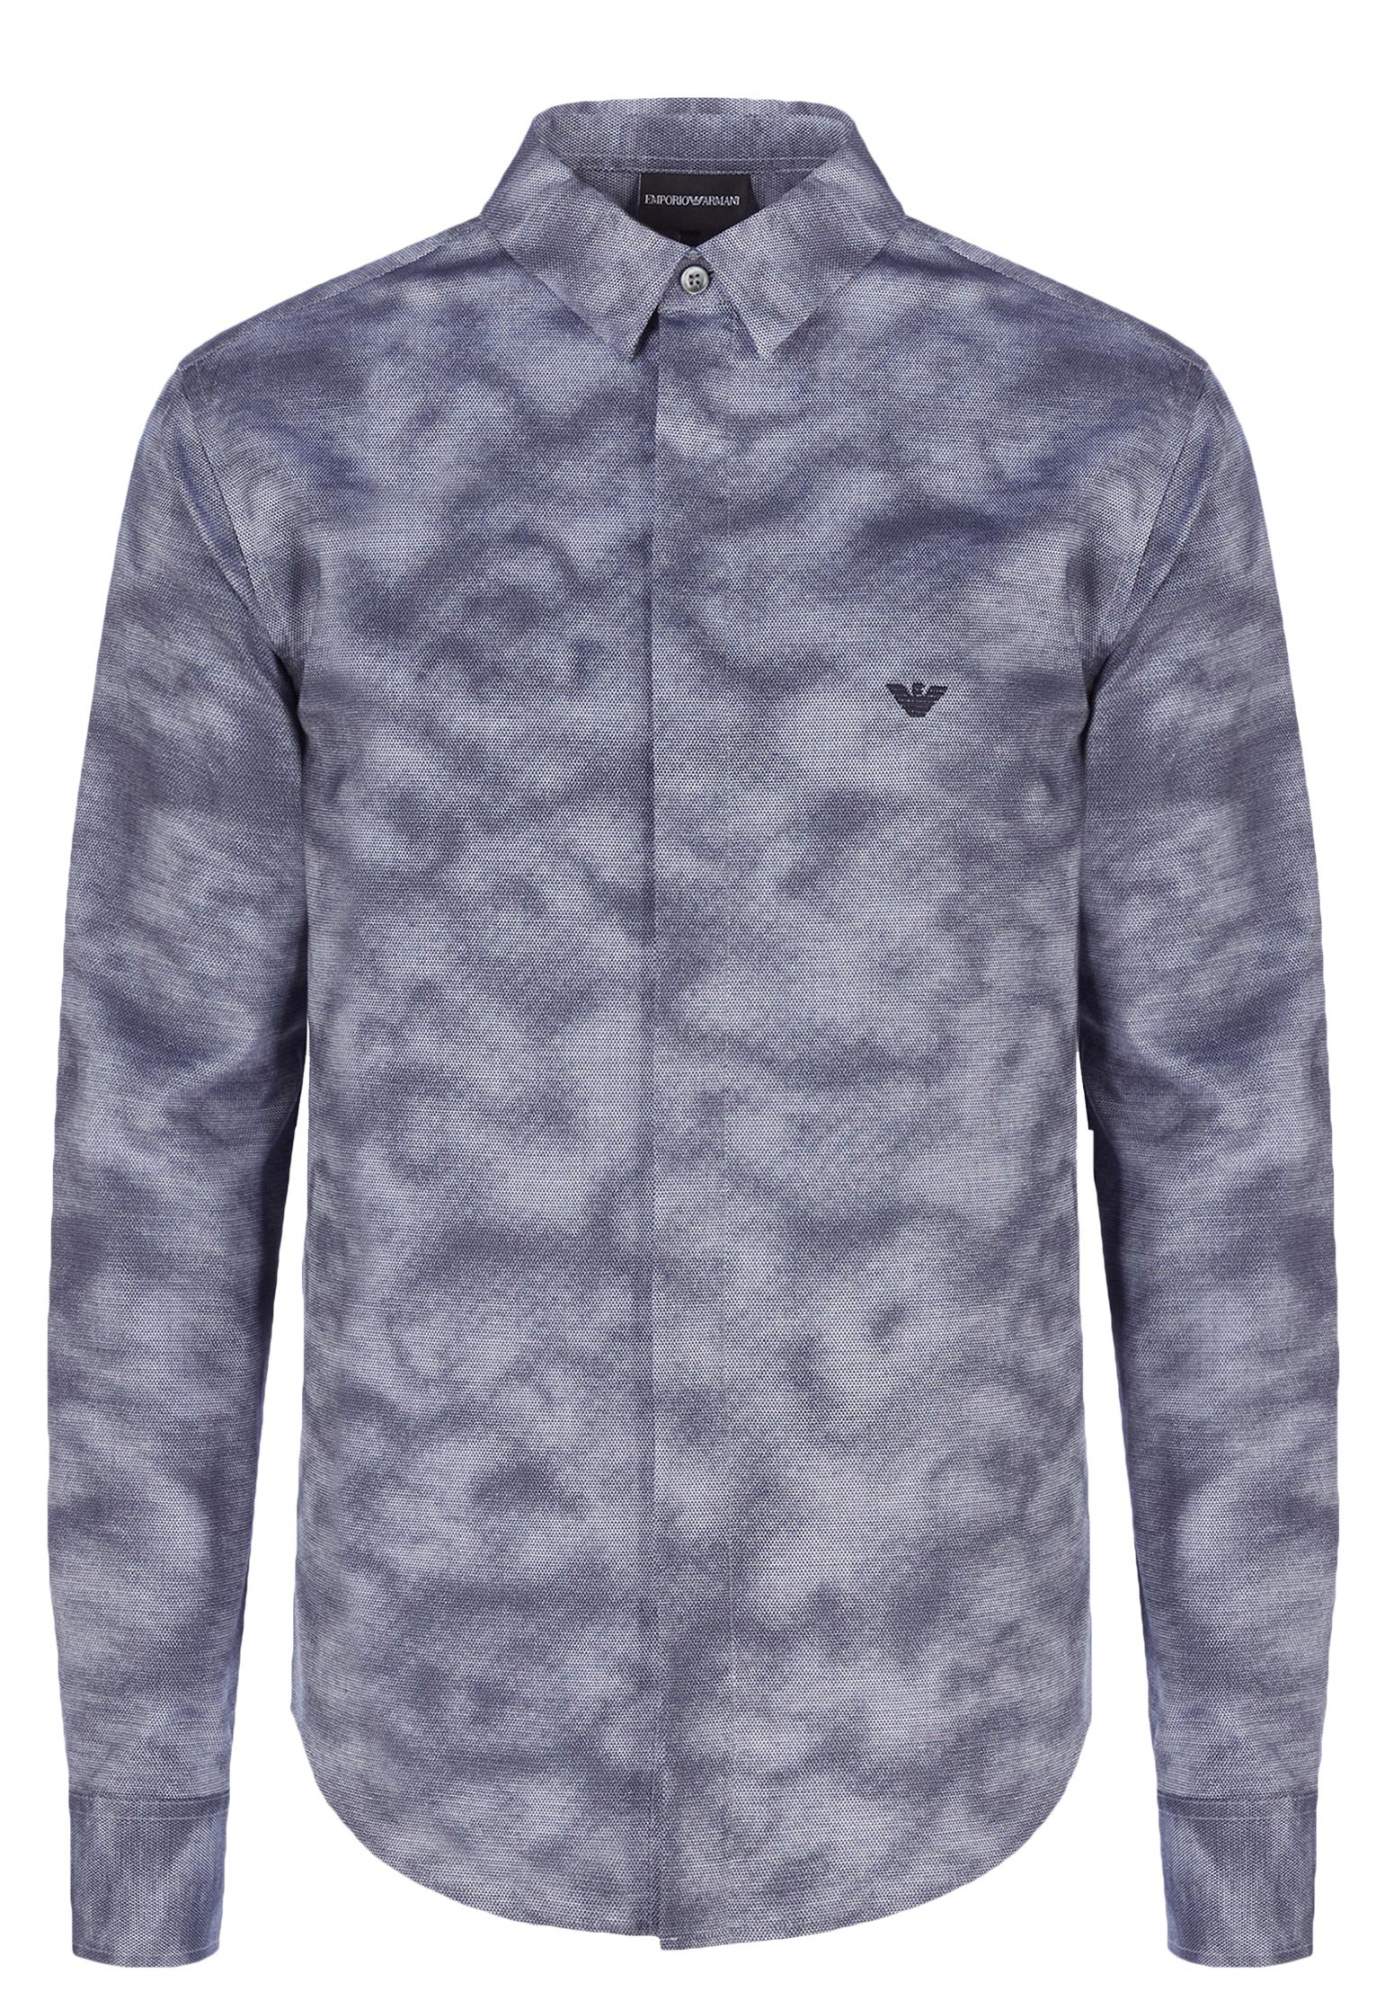 Рубашка мужская Emporio Armani 121708 синяя L